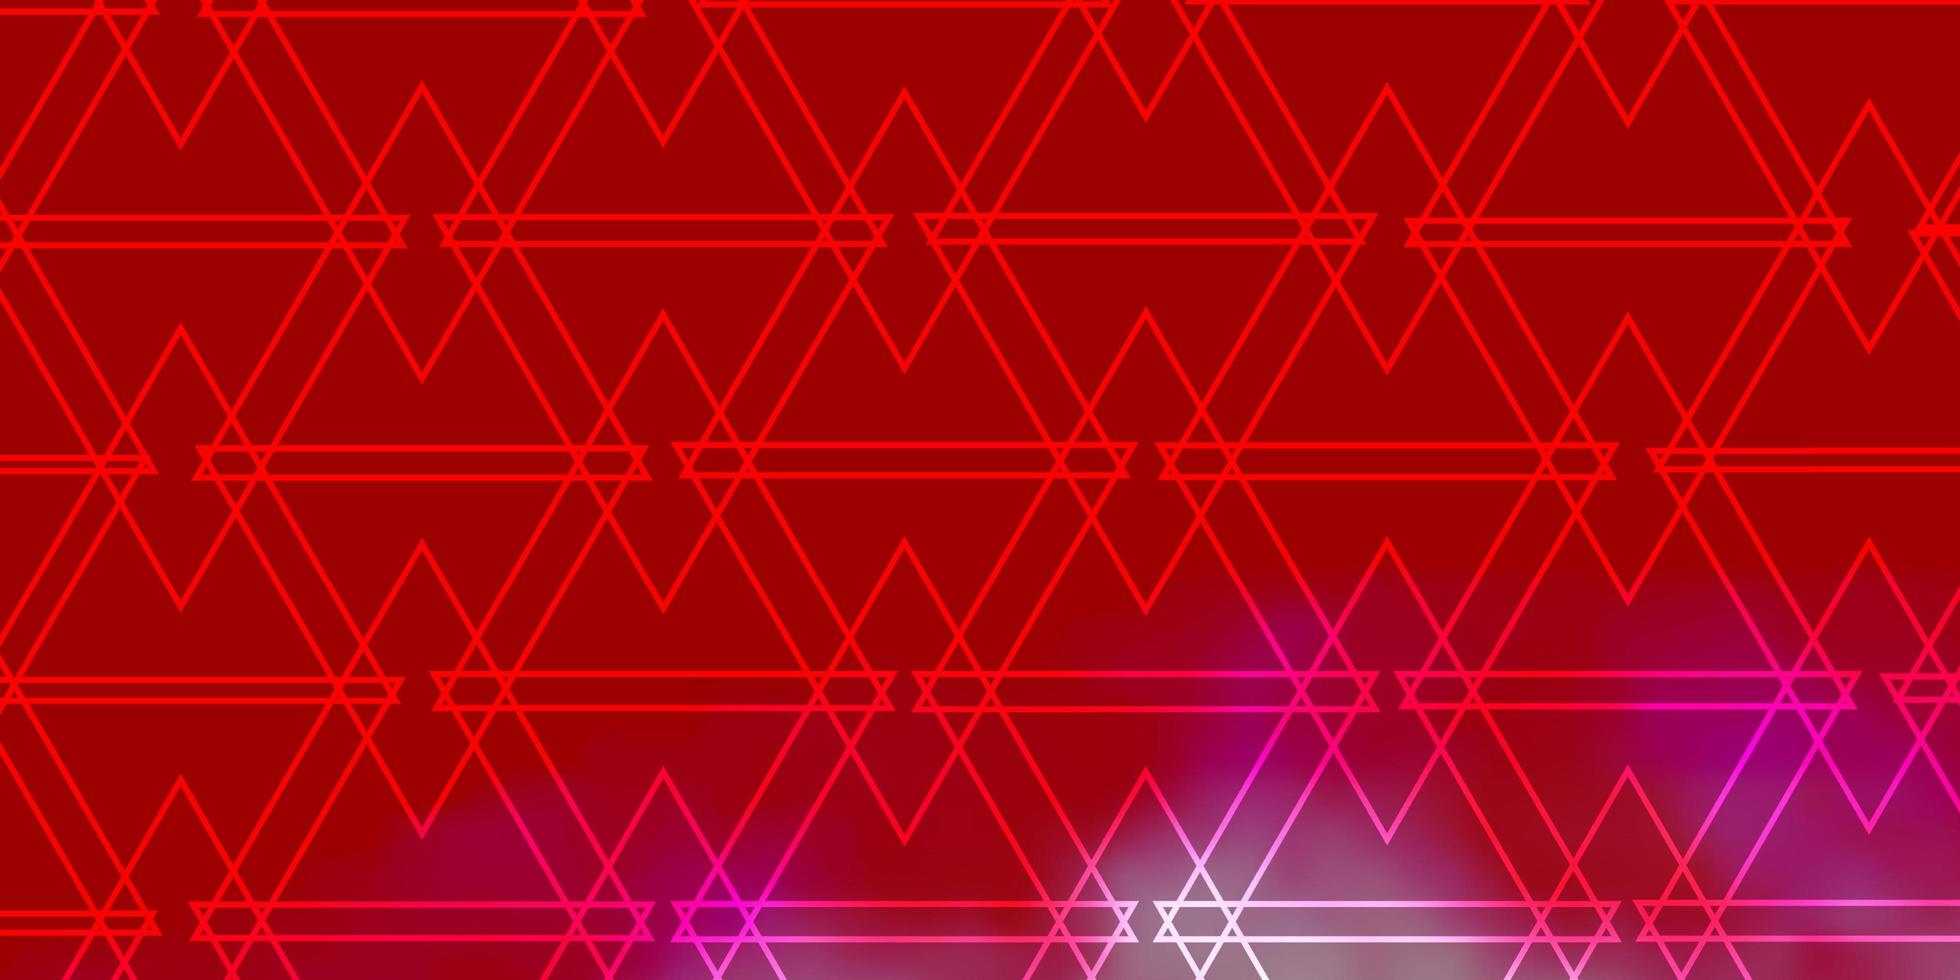 modelo de vetor vermelho claro com cristais, triângulos. ilustração gradiente abstrata com triângulos. padrão para livretos, folhetos